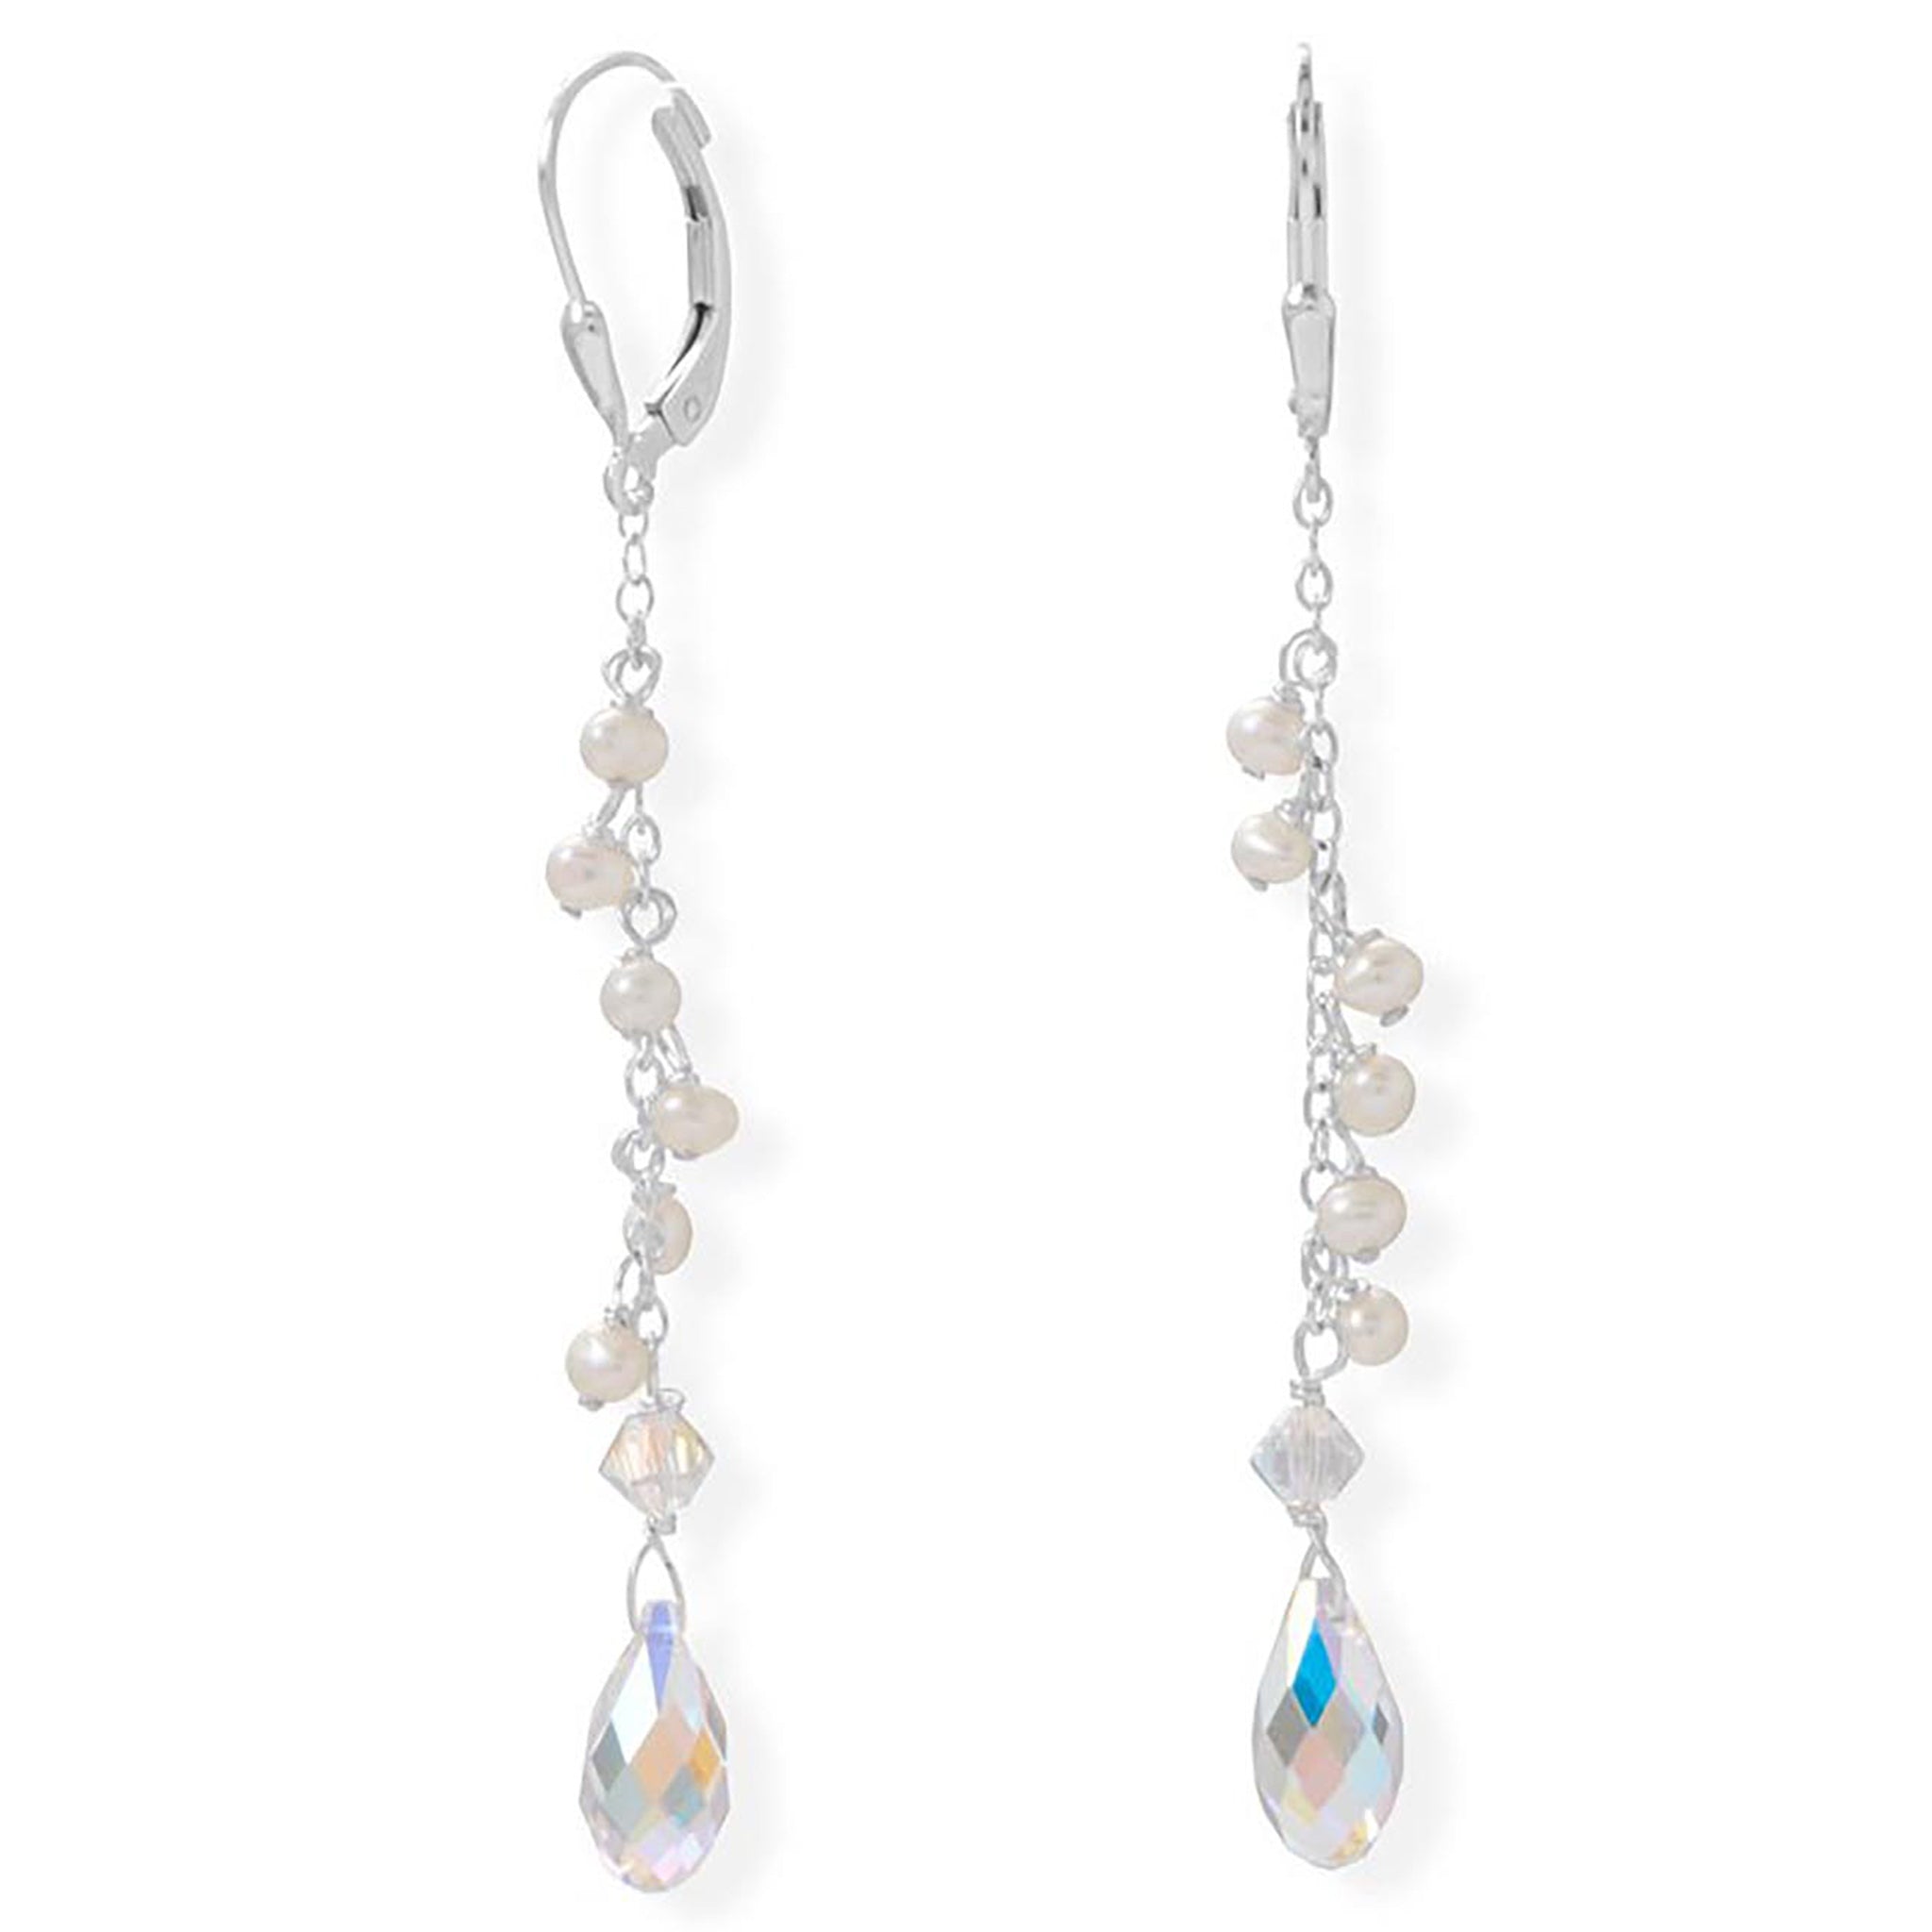 Swarovski Crystal with Pearl Bead Earrings